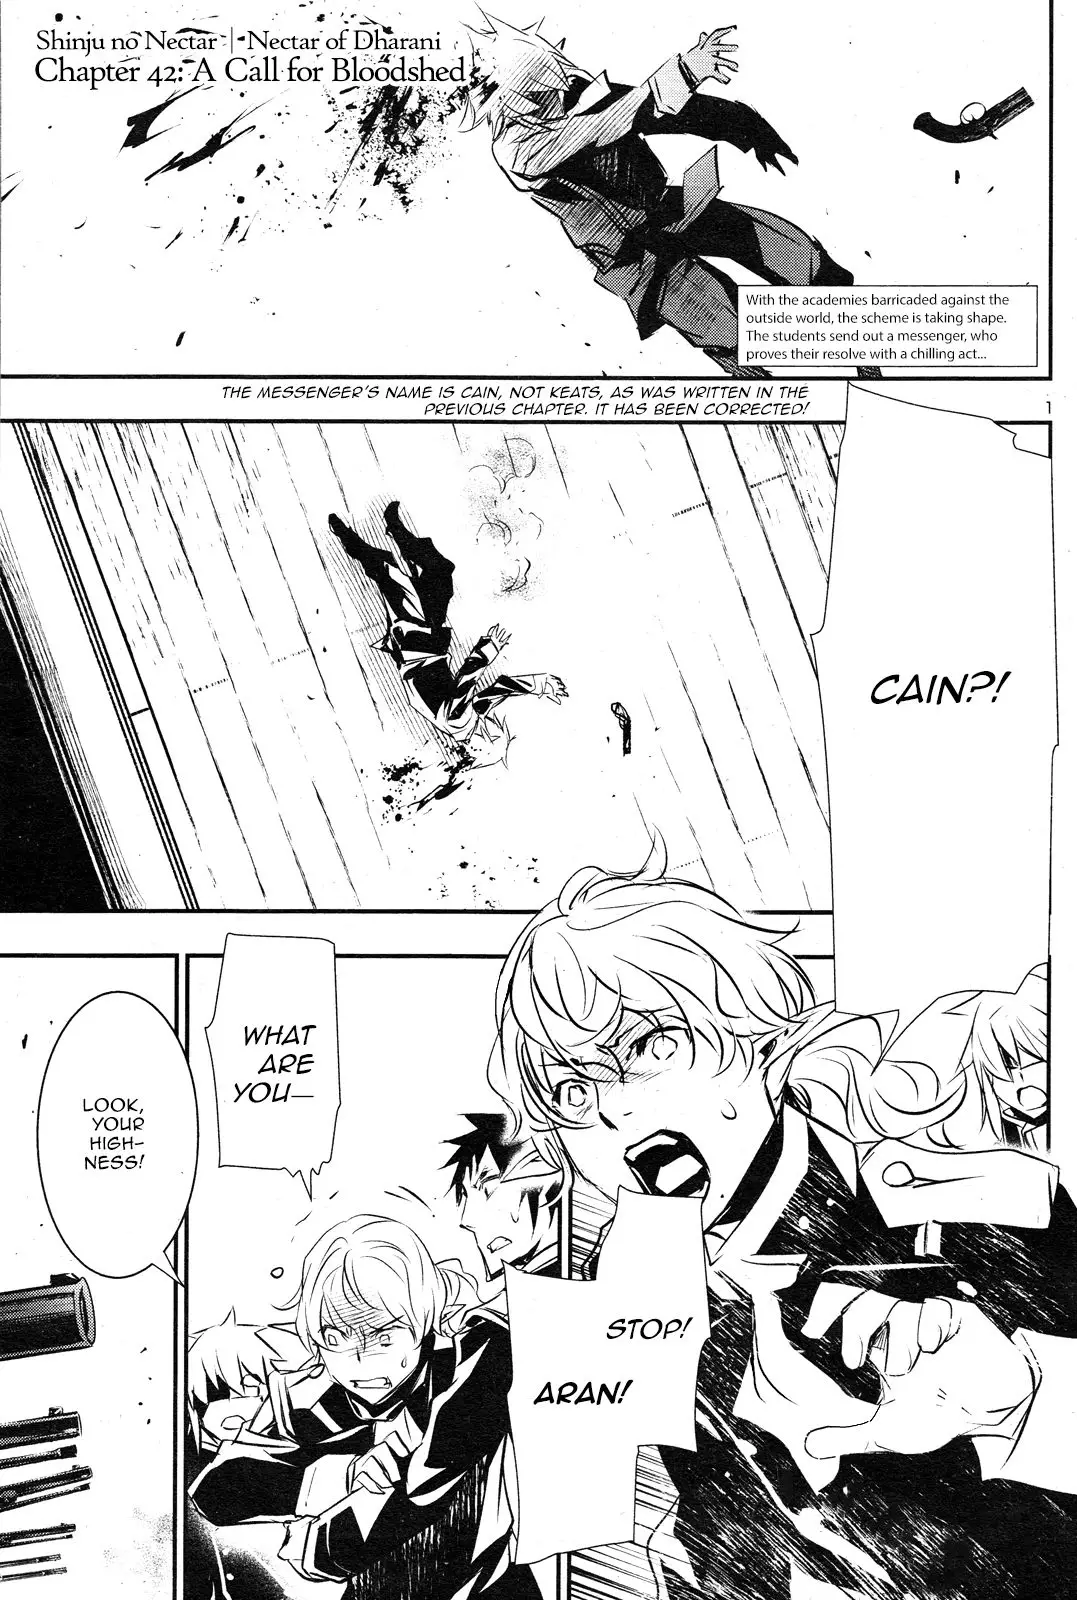 Shinju no Nectar - 42 page 1